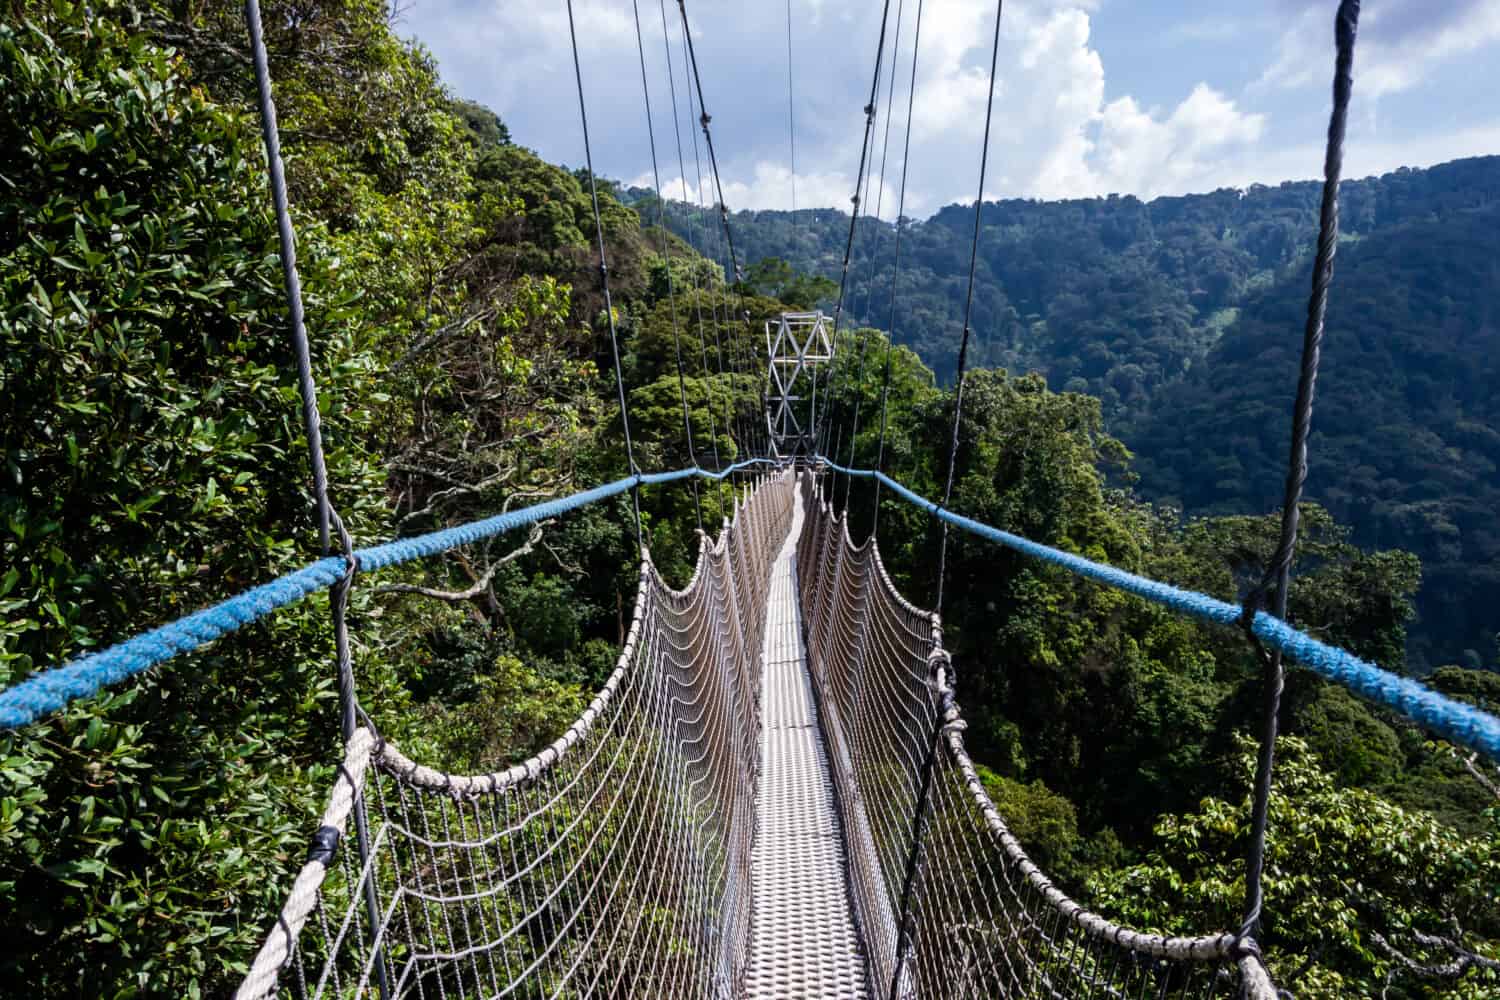 Giro del baldacchino della passerella, ponte nella foresta pluviale, Ruanda, parco nazionale di Nyungwe